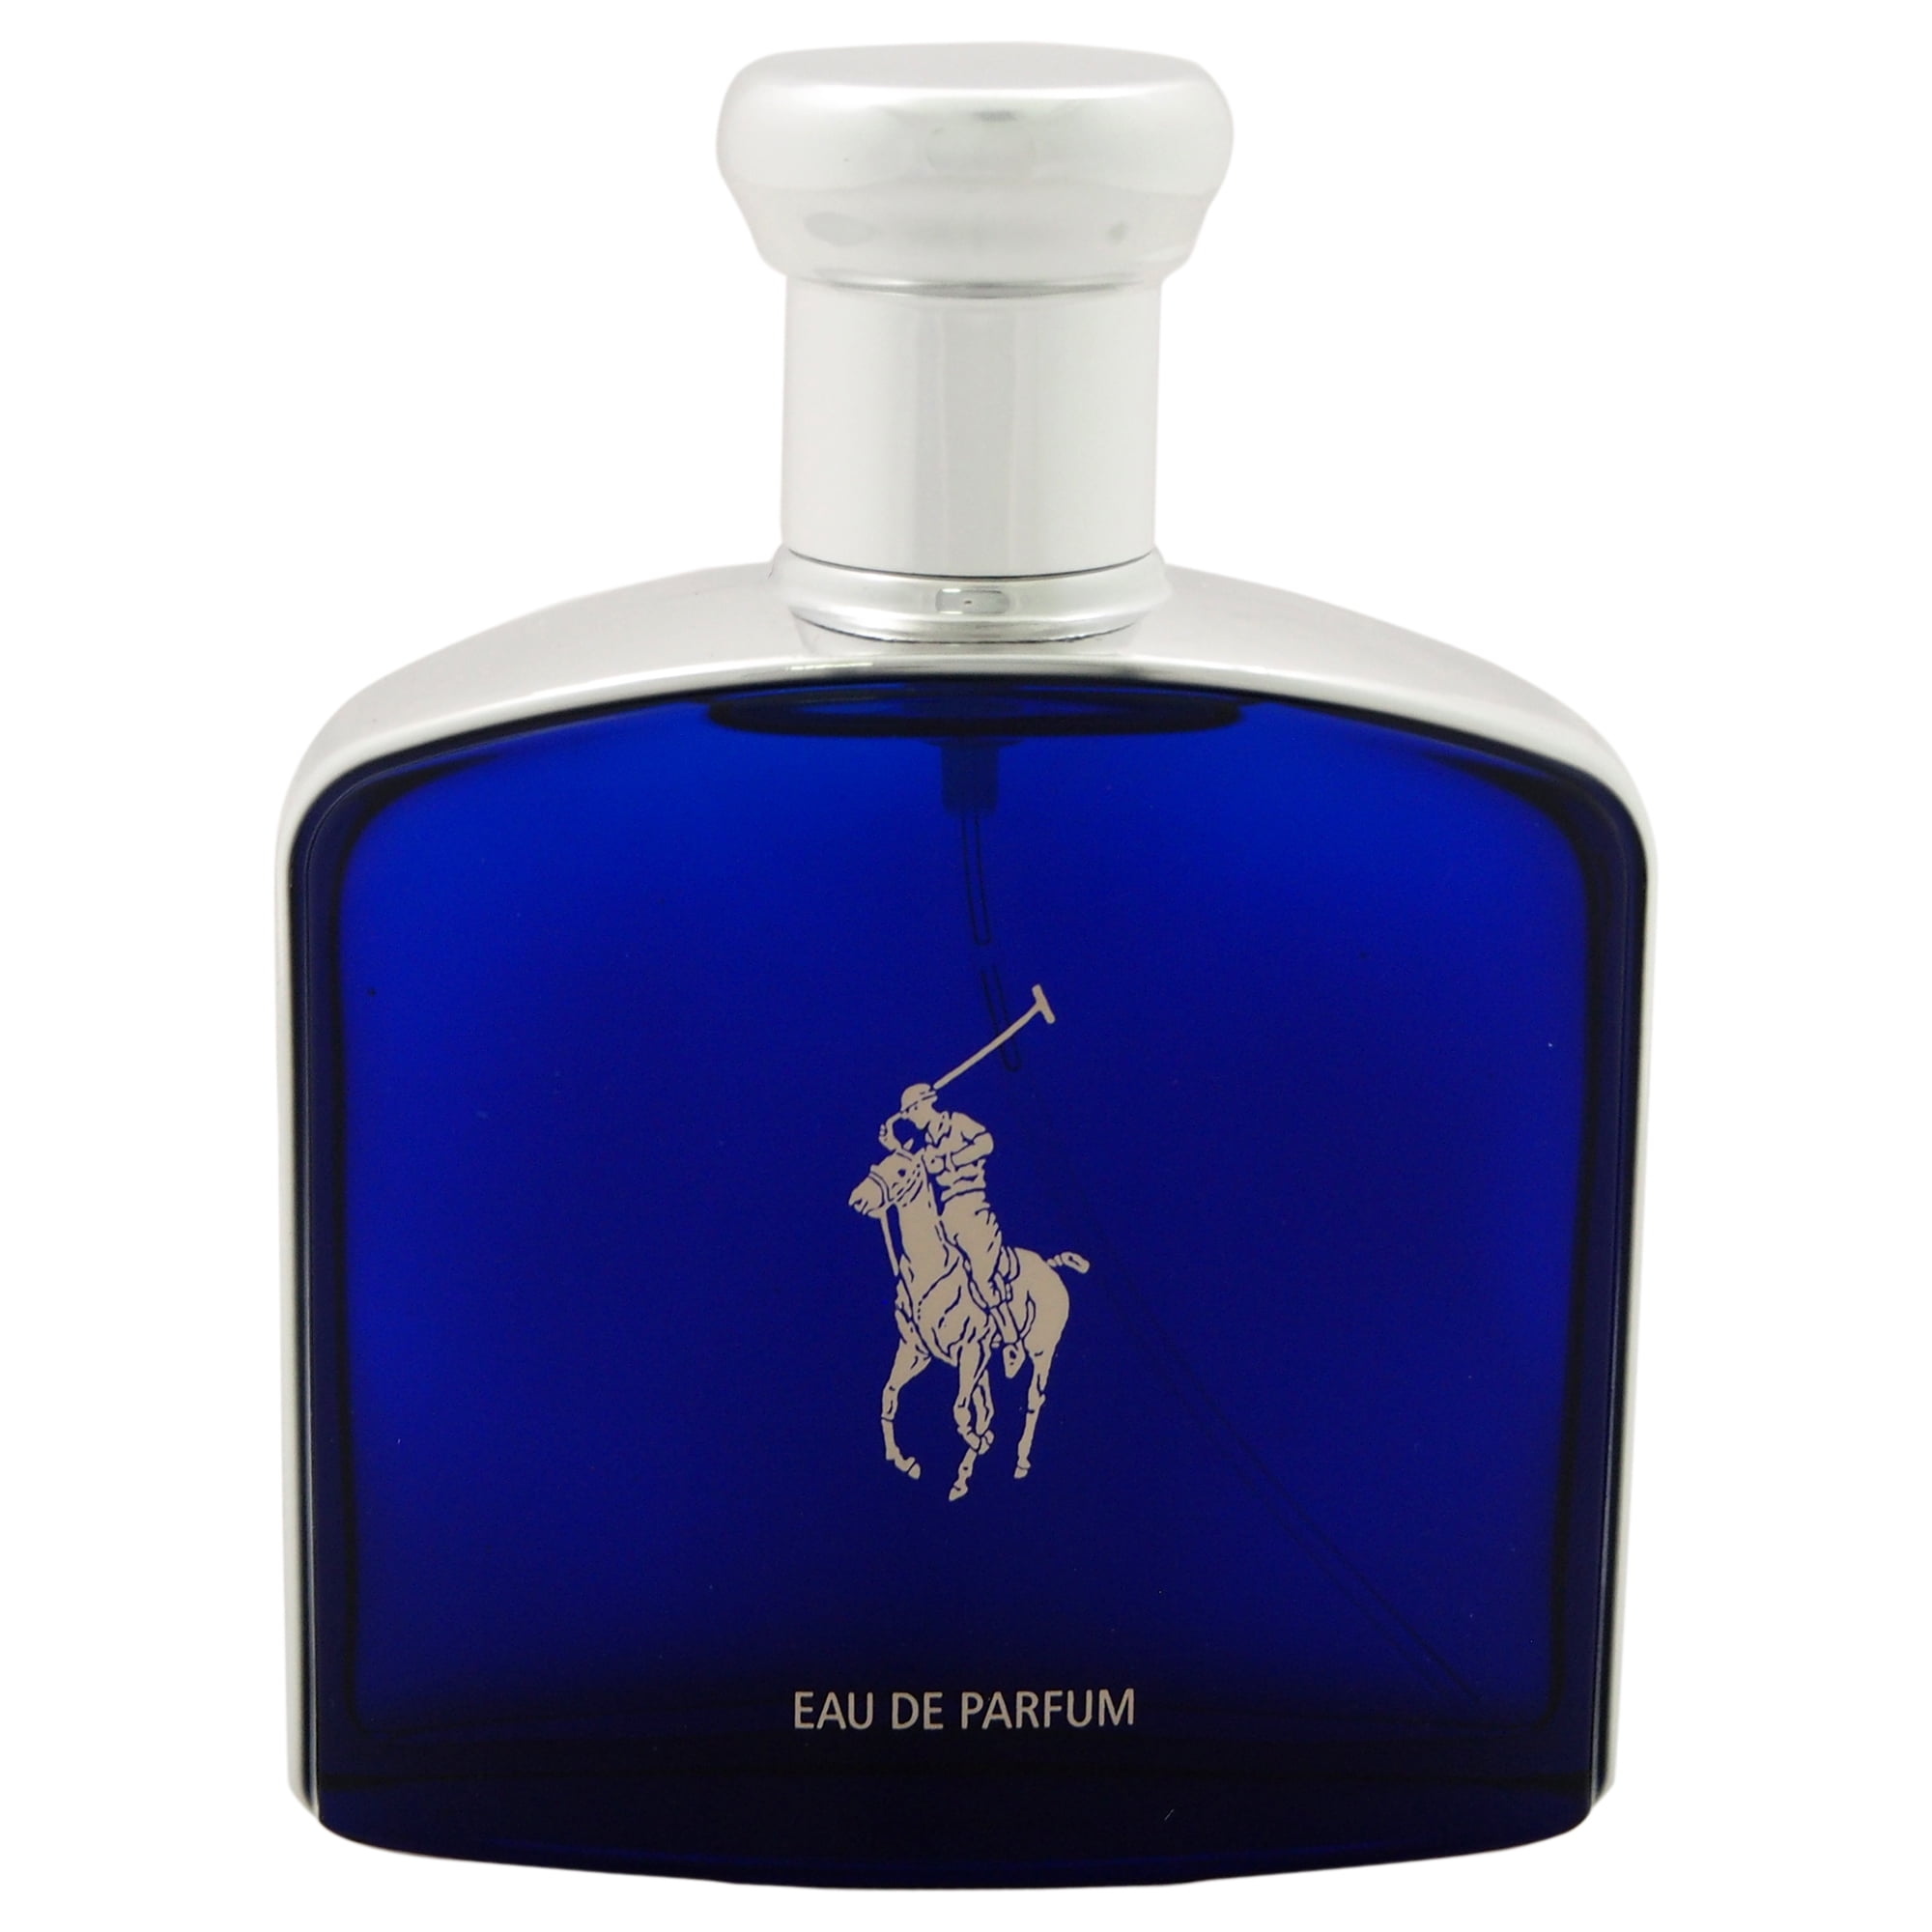 Ralph Lauren Polo Blue Eau De Parfum 